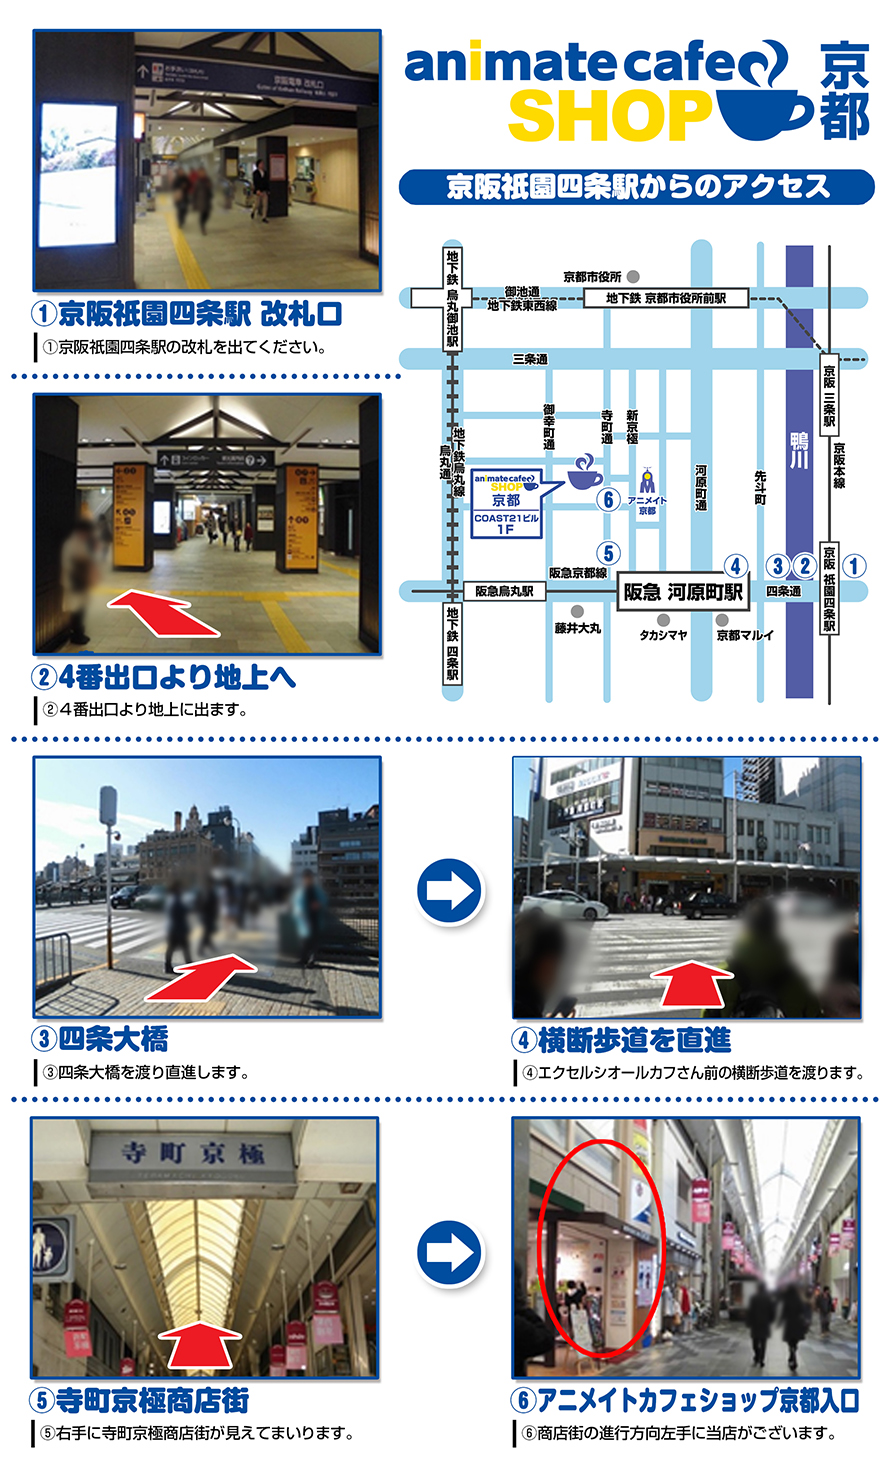 アニメイトカフェショップ京都へのアクセス方法はこちら お知らせ アニメイトカフェ